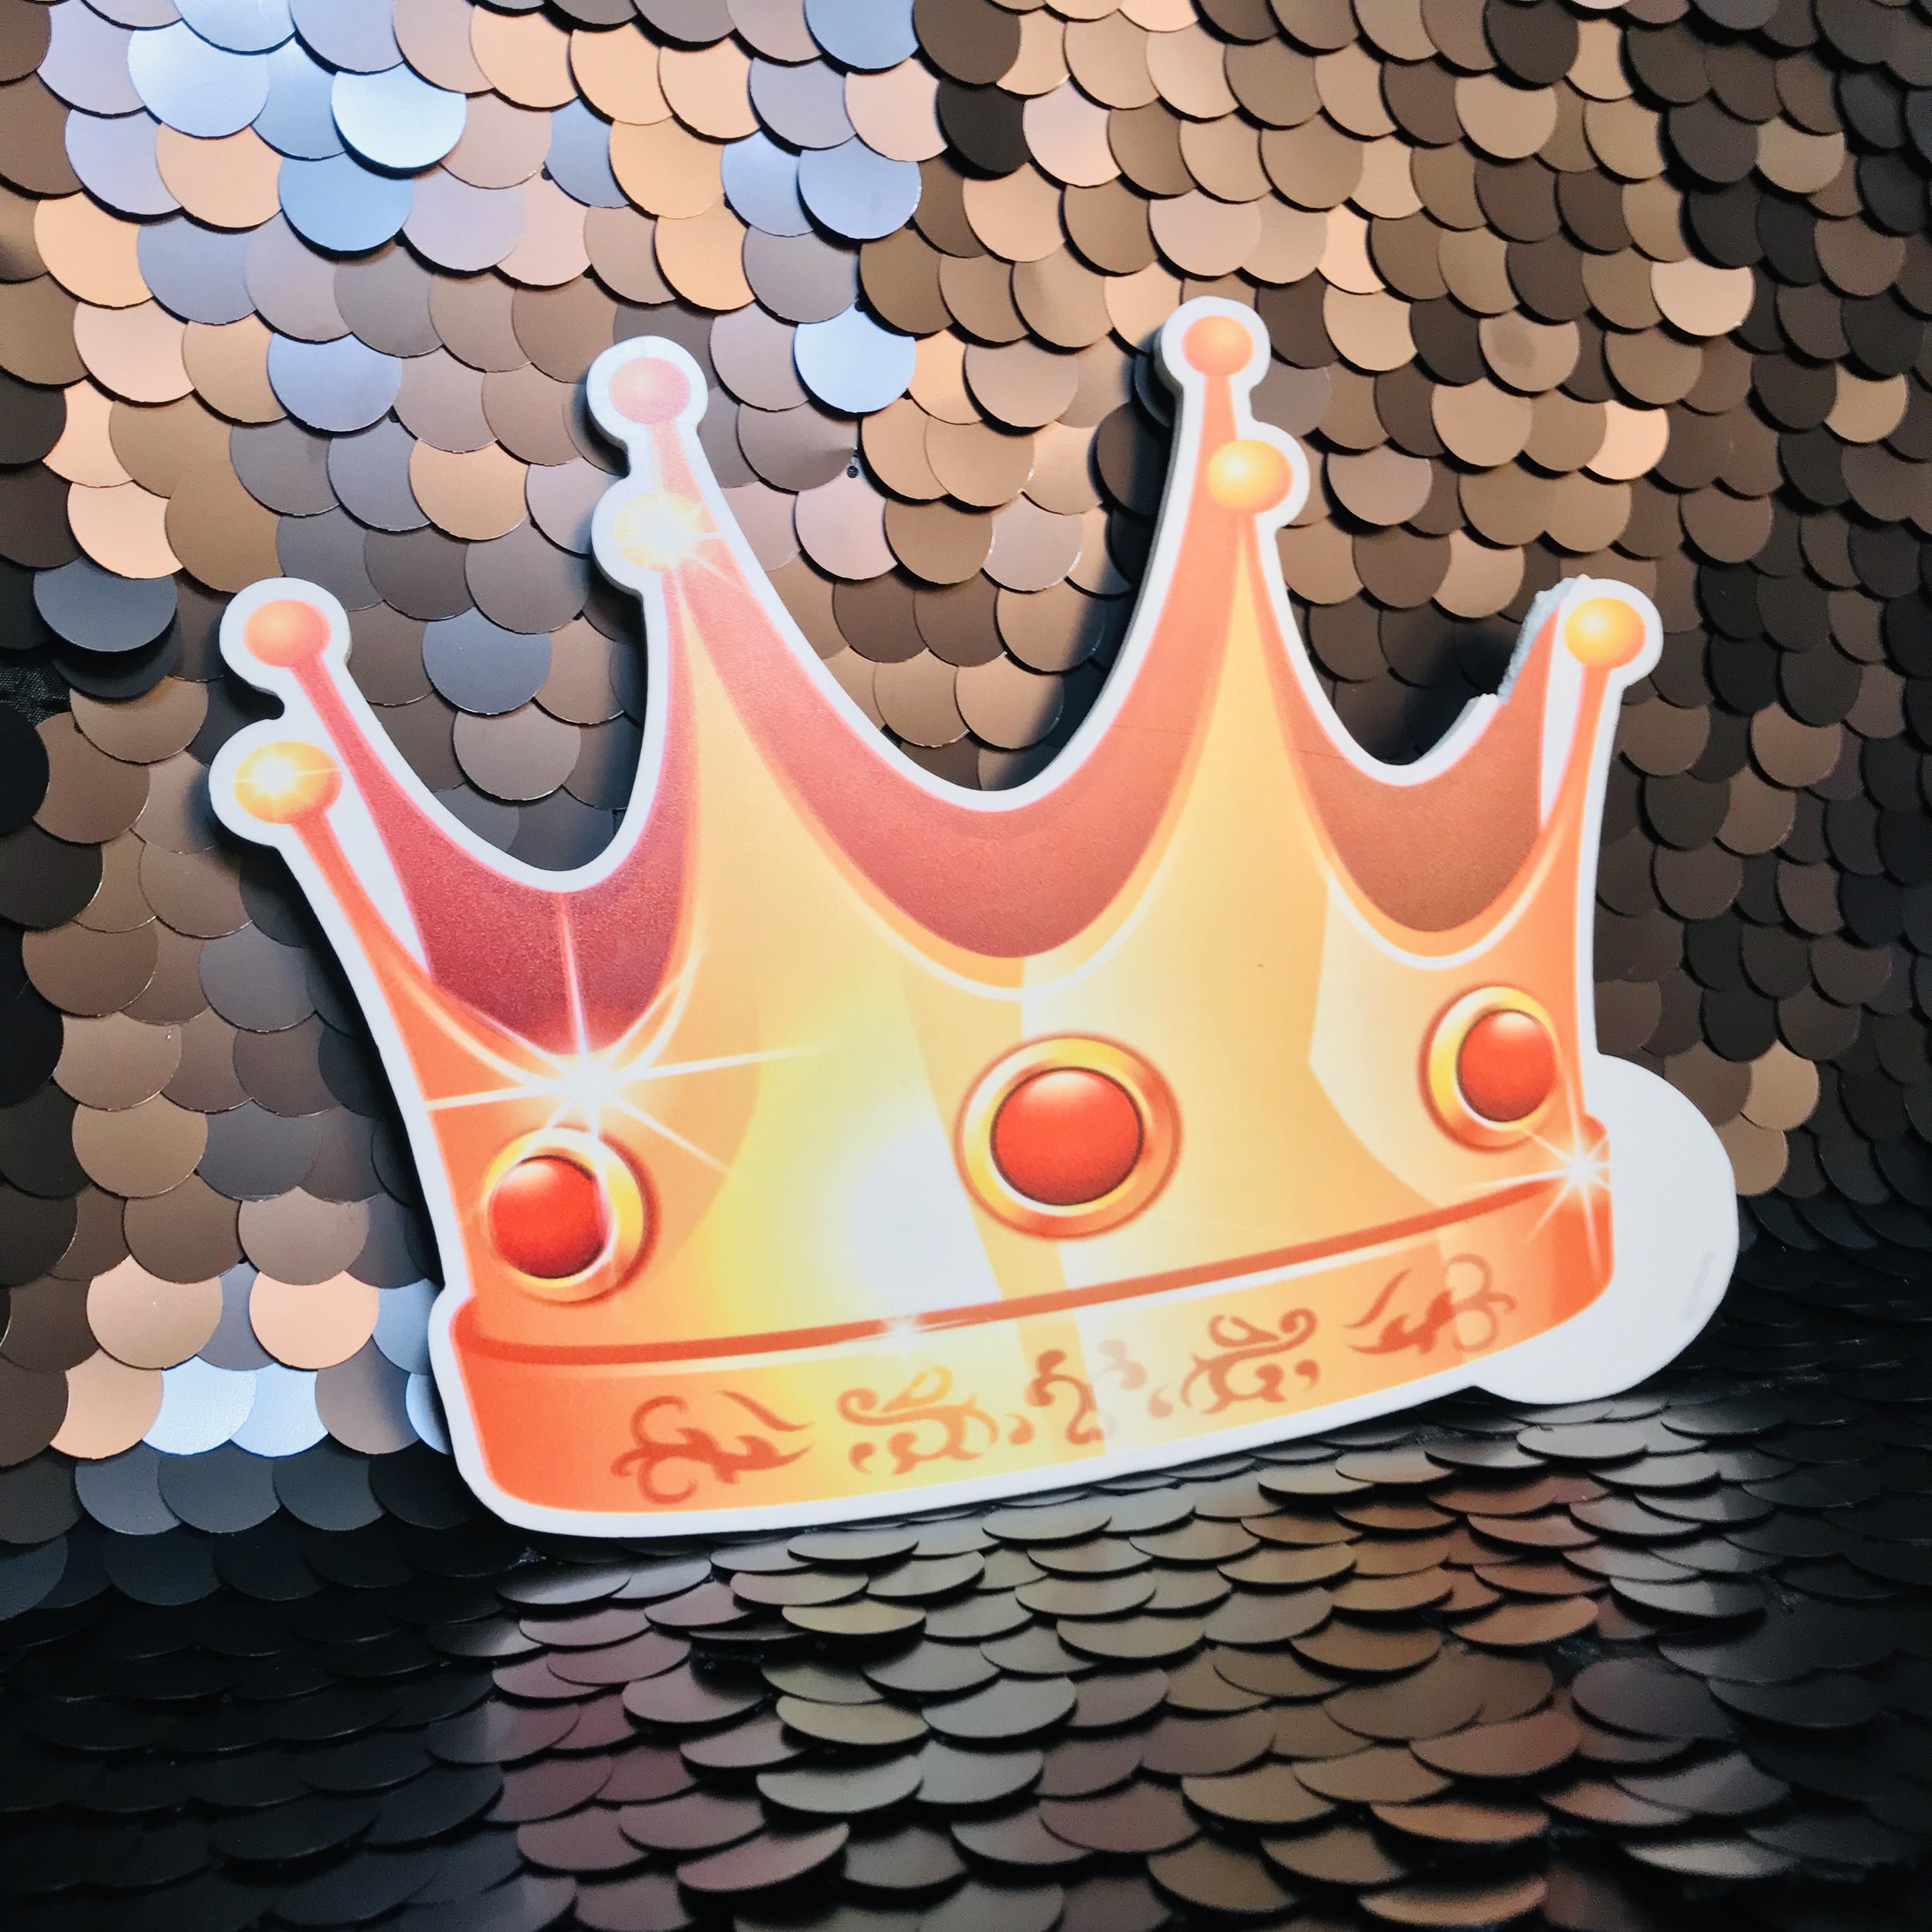 Crown.jpg